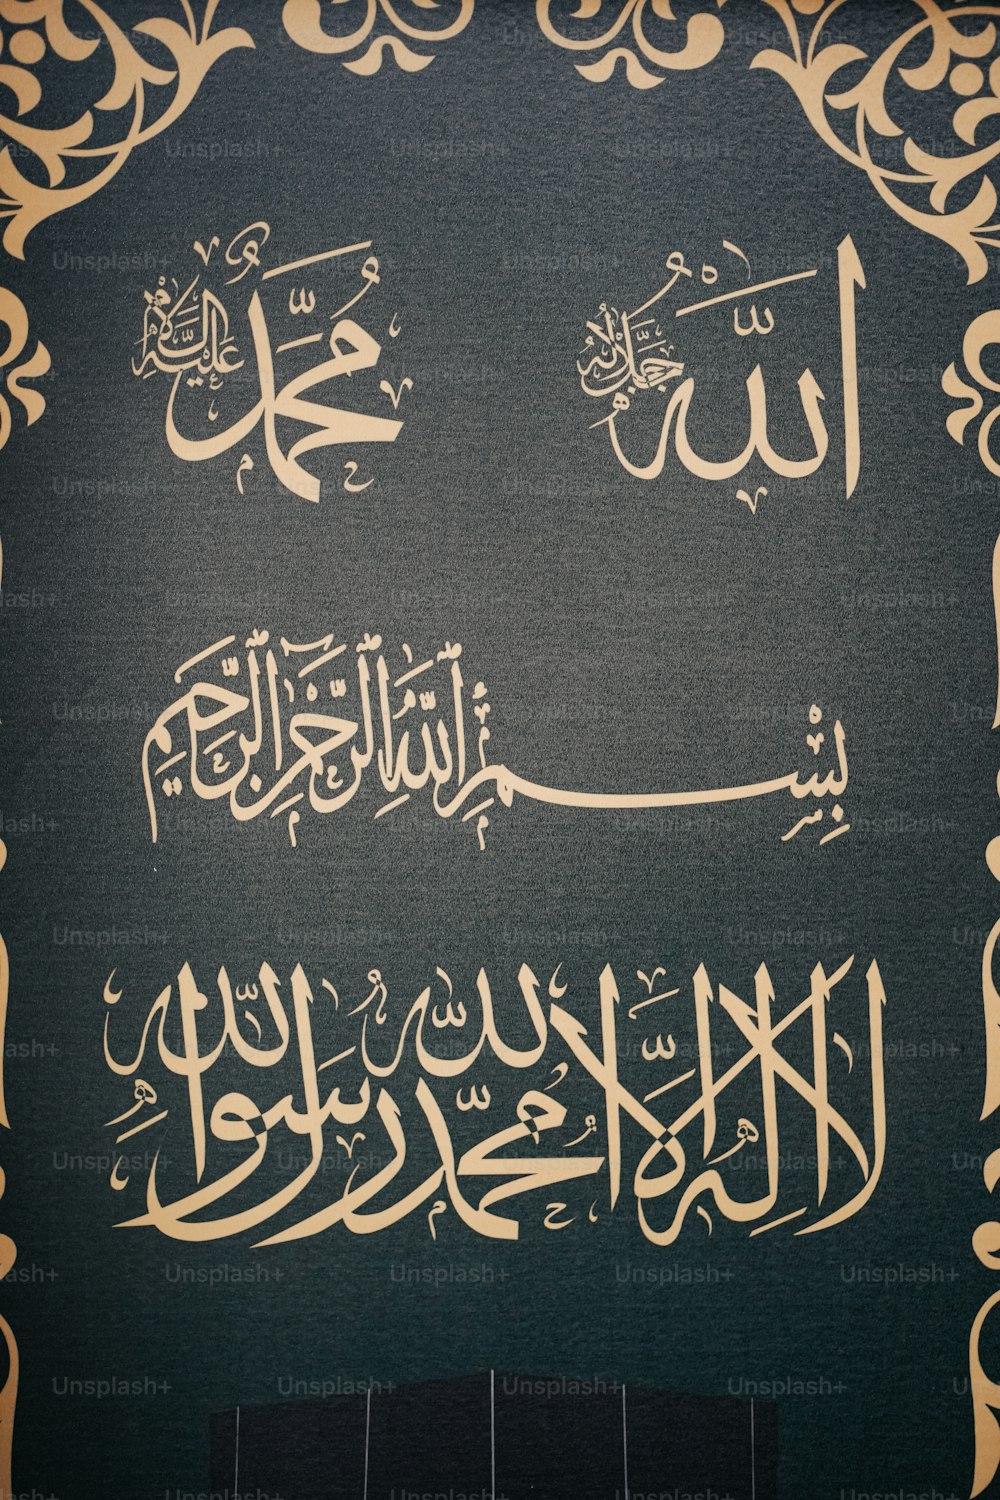 Una imagen de escritura árabe en una pared